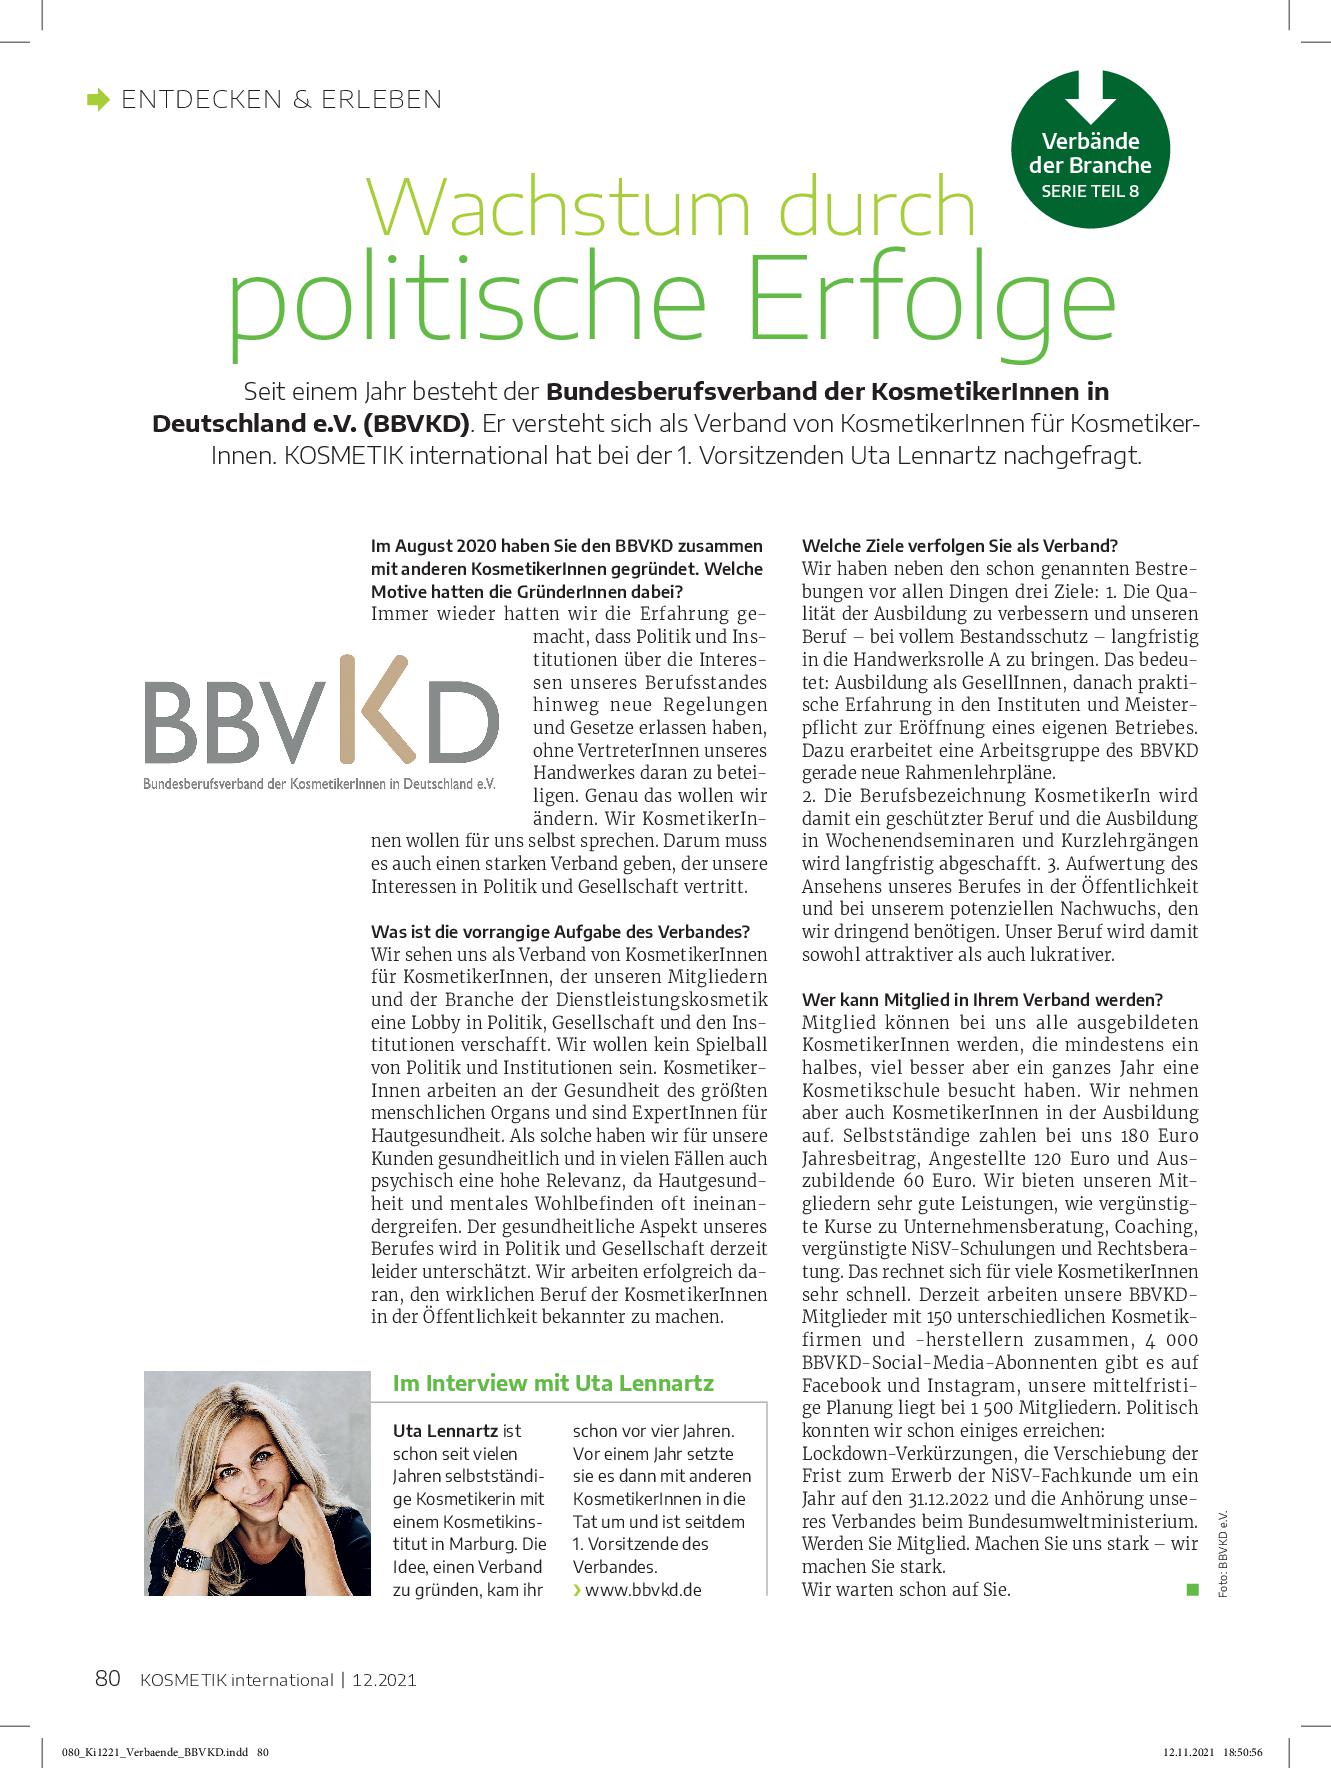 Featured image for “Interview des “Fachmagazins Kosmetik International” mit 1. Vorsitzender Uta Lennartz, Ausgabe 12.2021”